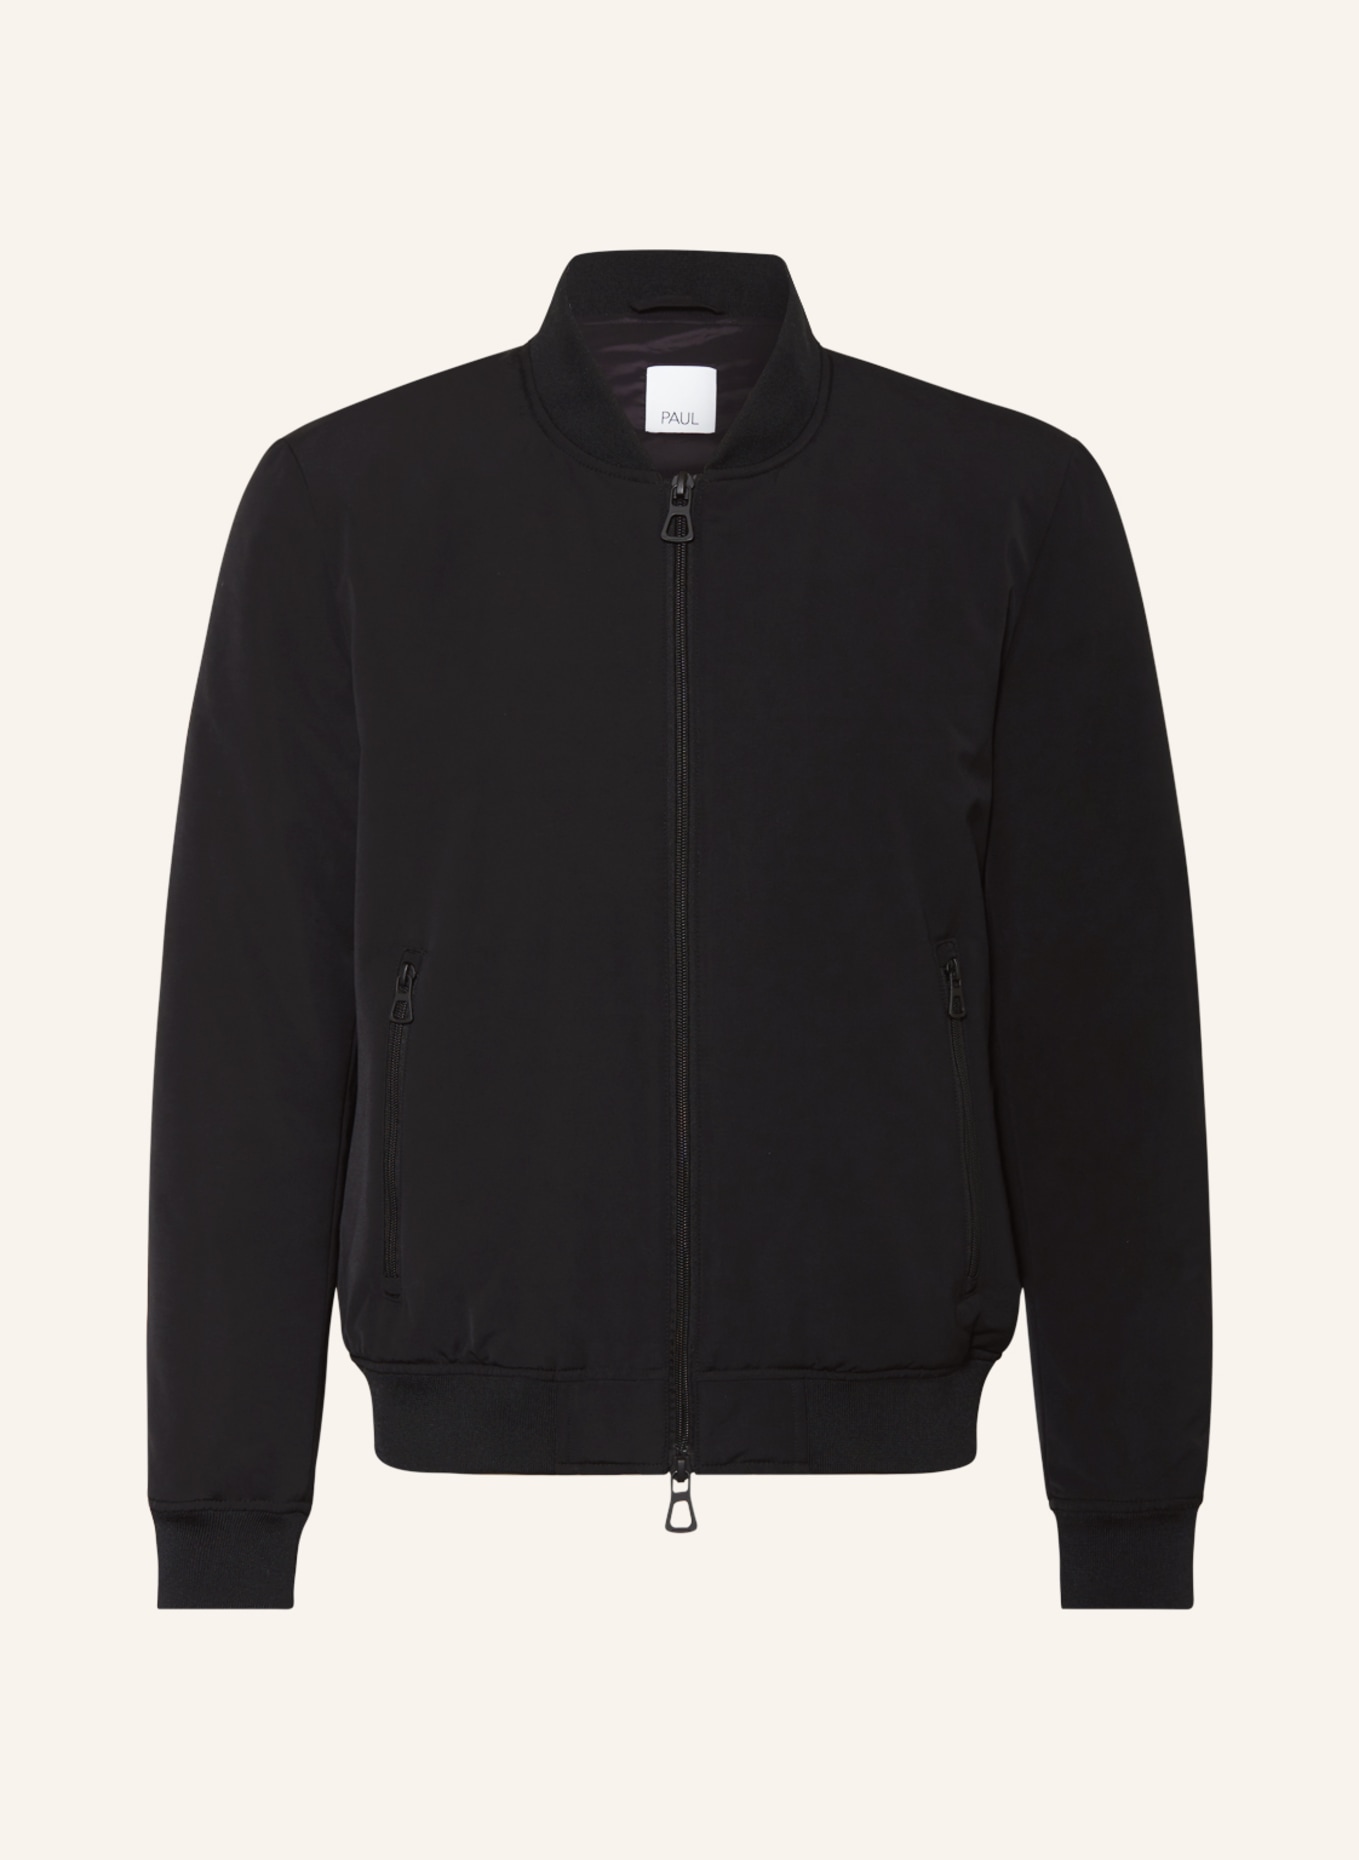 PAUL Bomber jacket, Color: BLACK (Image 1)